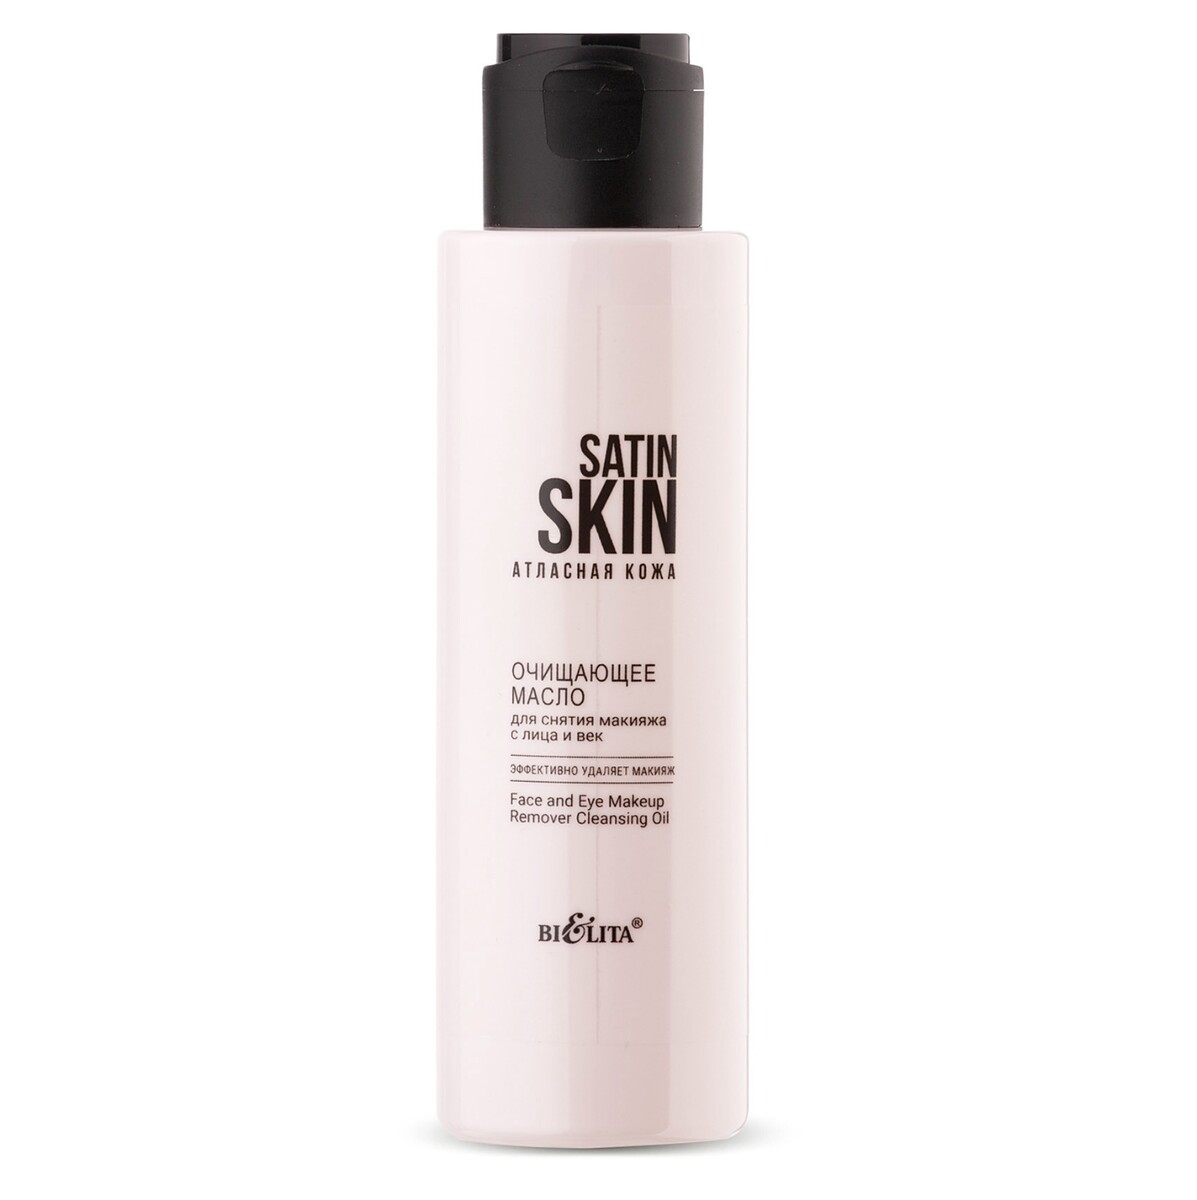 Satin skin атласная кожа масло очищающее для снятия макияжа с лица и век 115мл молочко для лица натуральное очищающее synergetic для снятия макияжа 200 мл